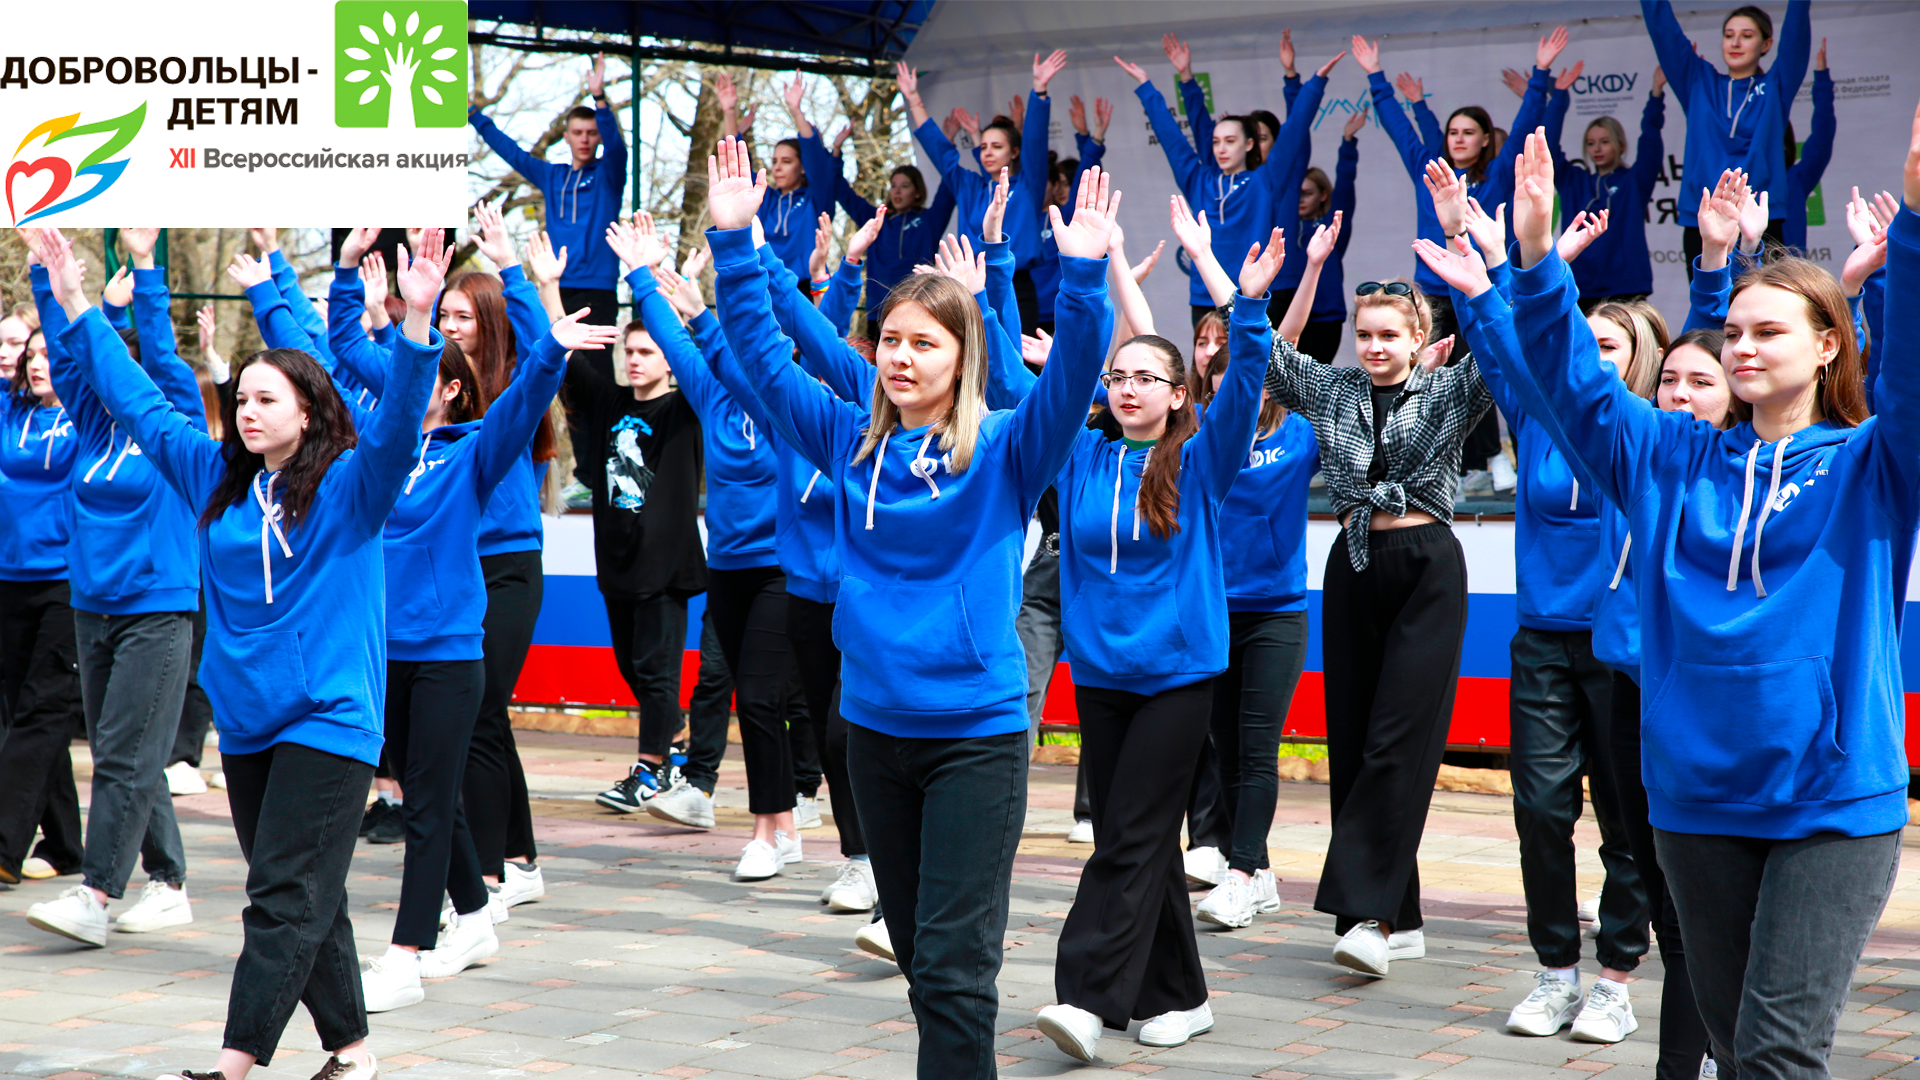 Более 15 тысяч организаций из 73 регионов Российской Федерации участвовали в мероприятиях XII Всероссийской акции «Добровольцы-детям»